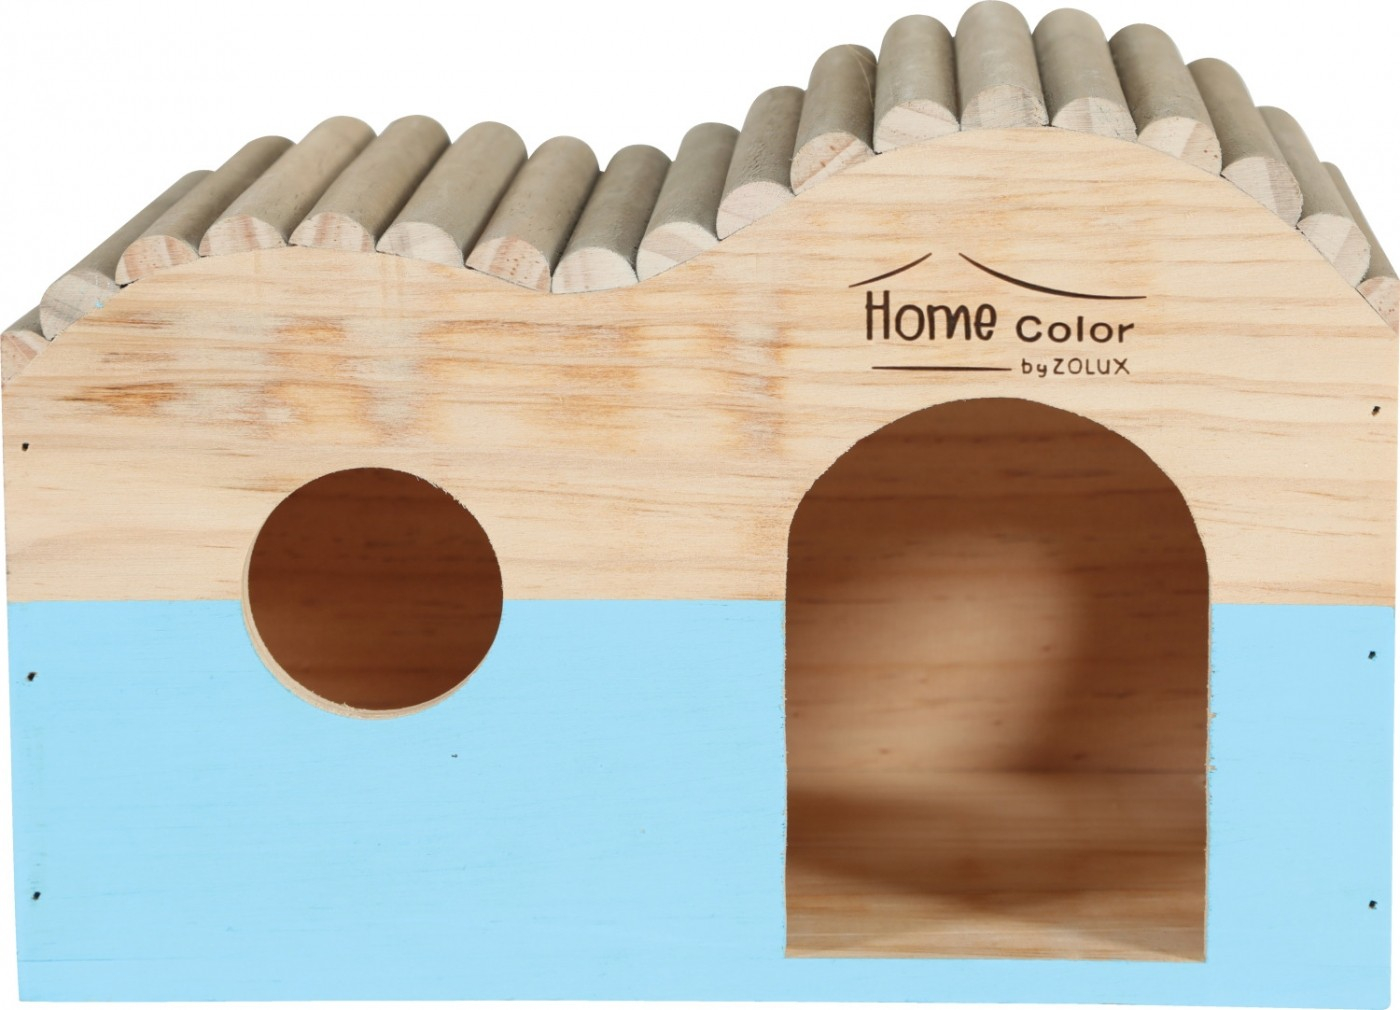 Casa de madera para roedor ola tronco - Home color